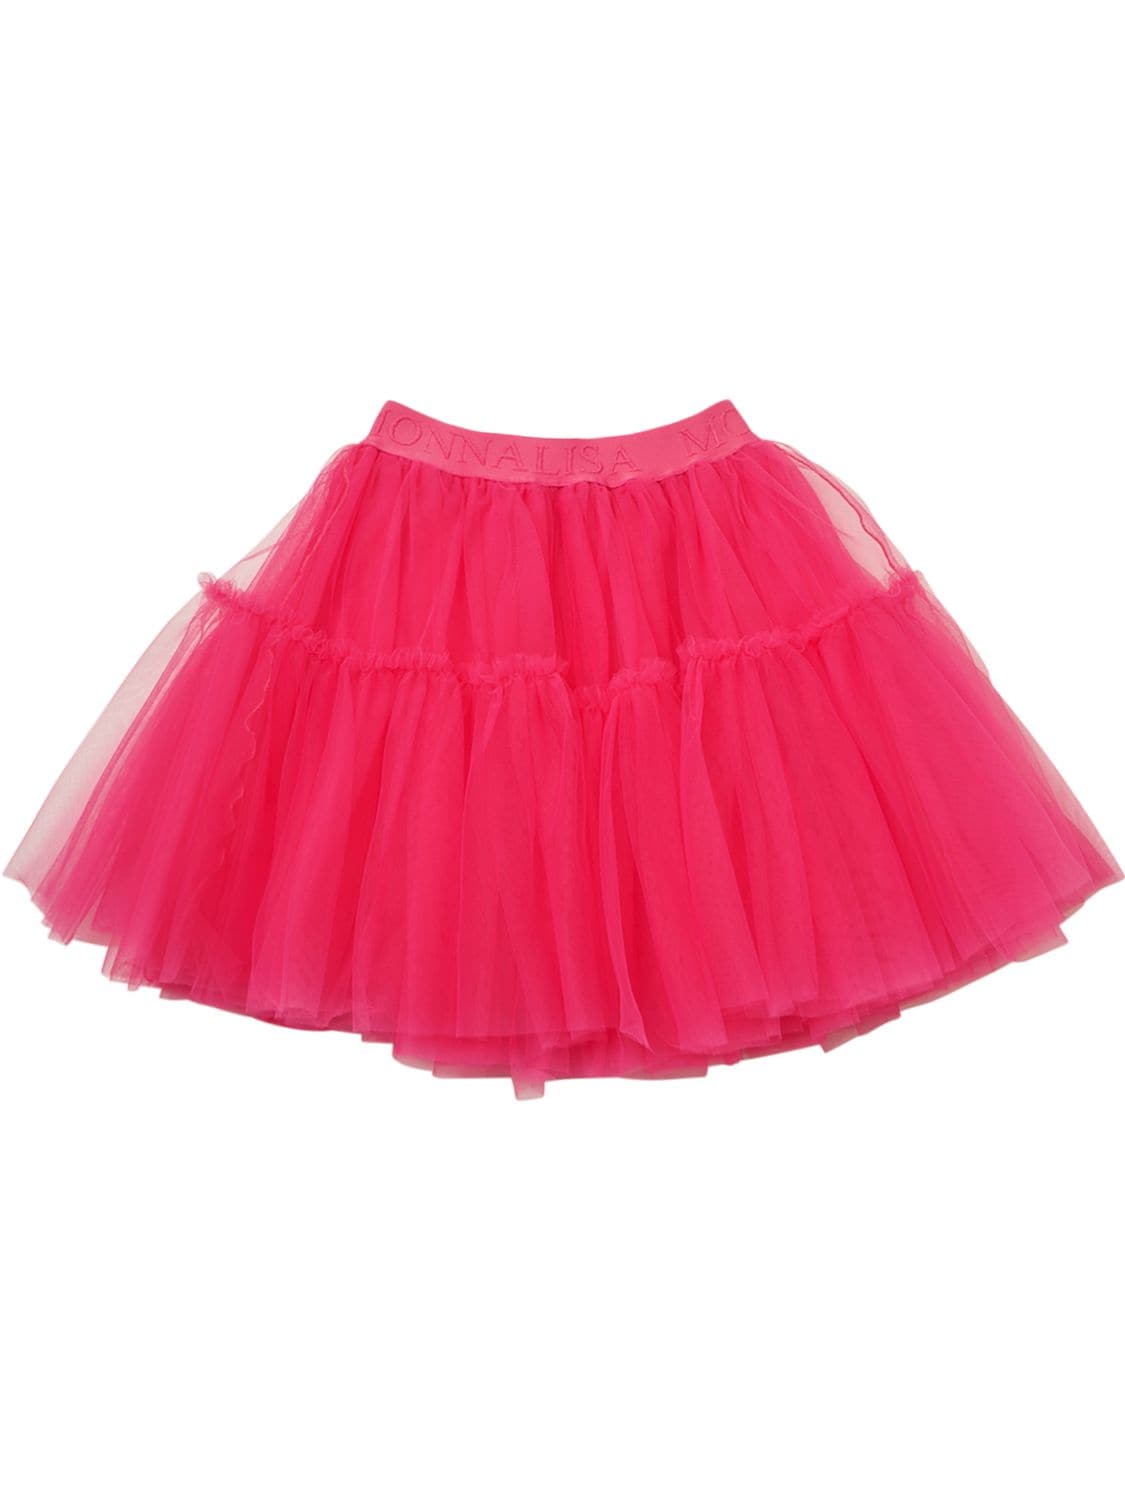 Monnalisa Kids' Tulle Skirt In Fuchsia